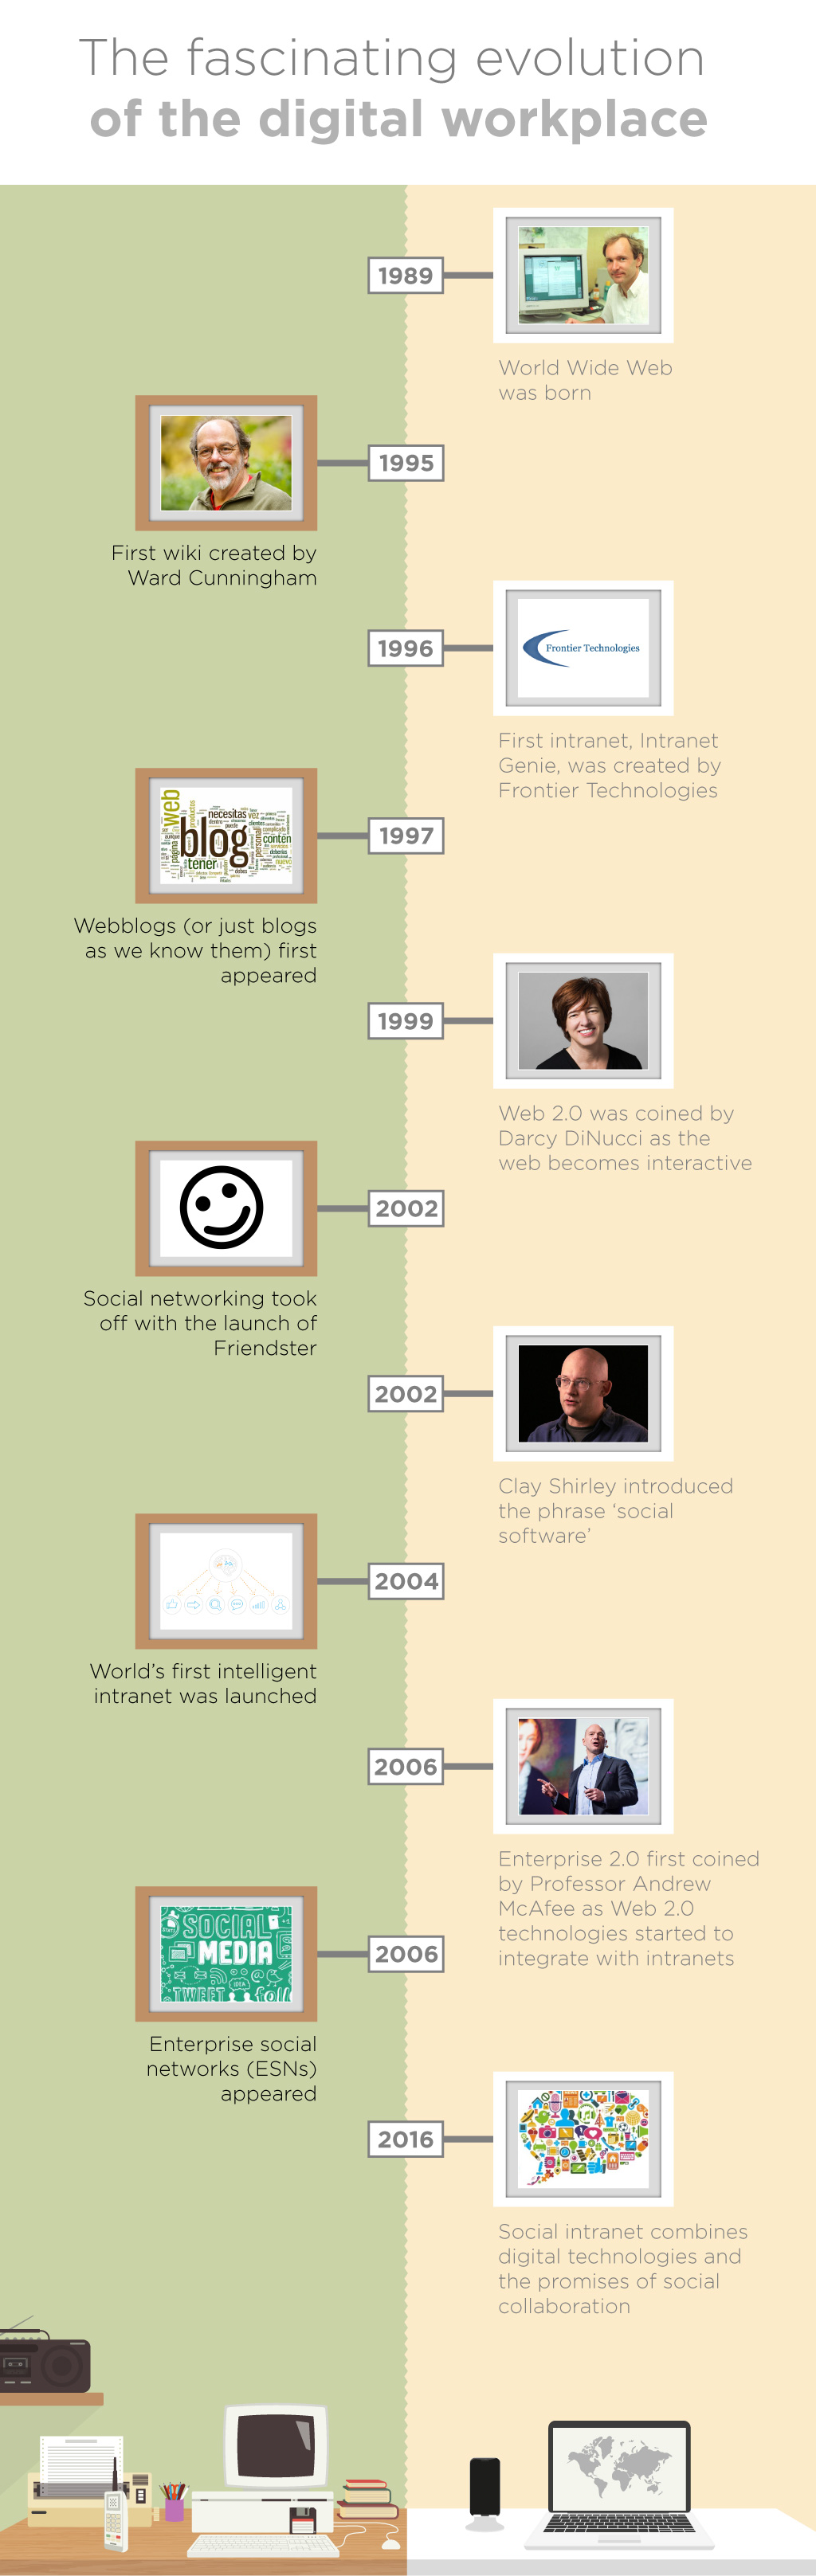 The evolution of digital workplace timeline